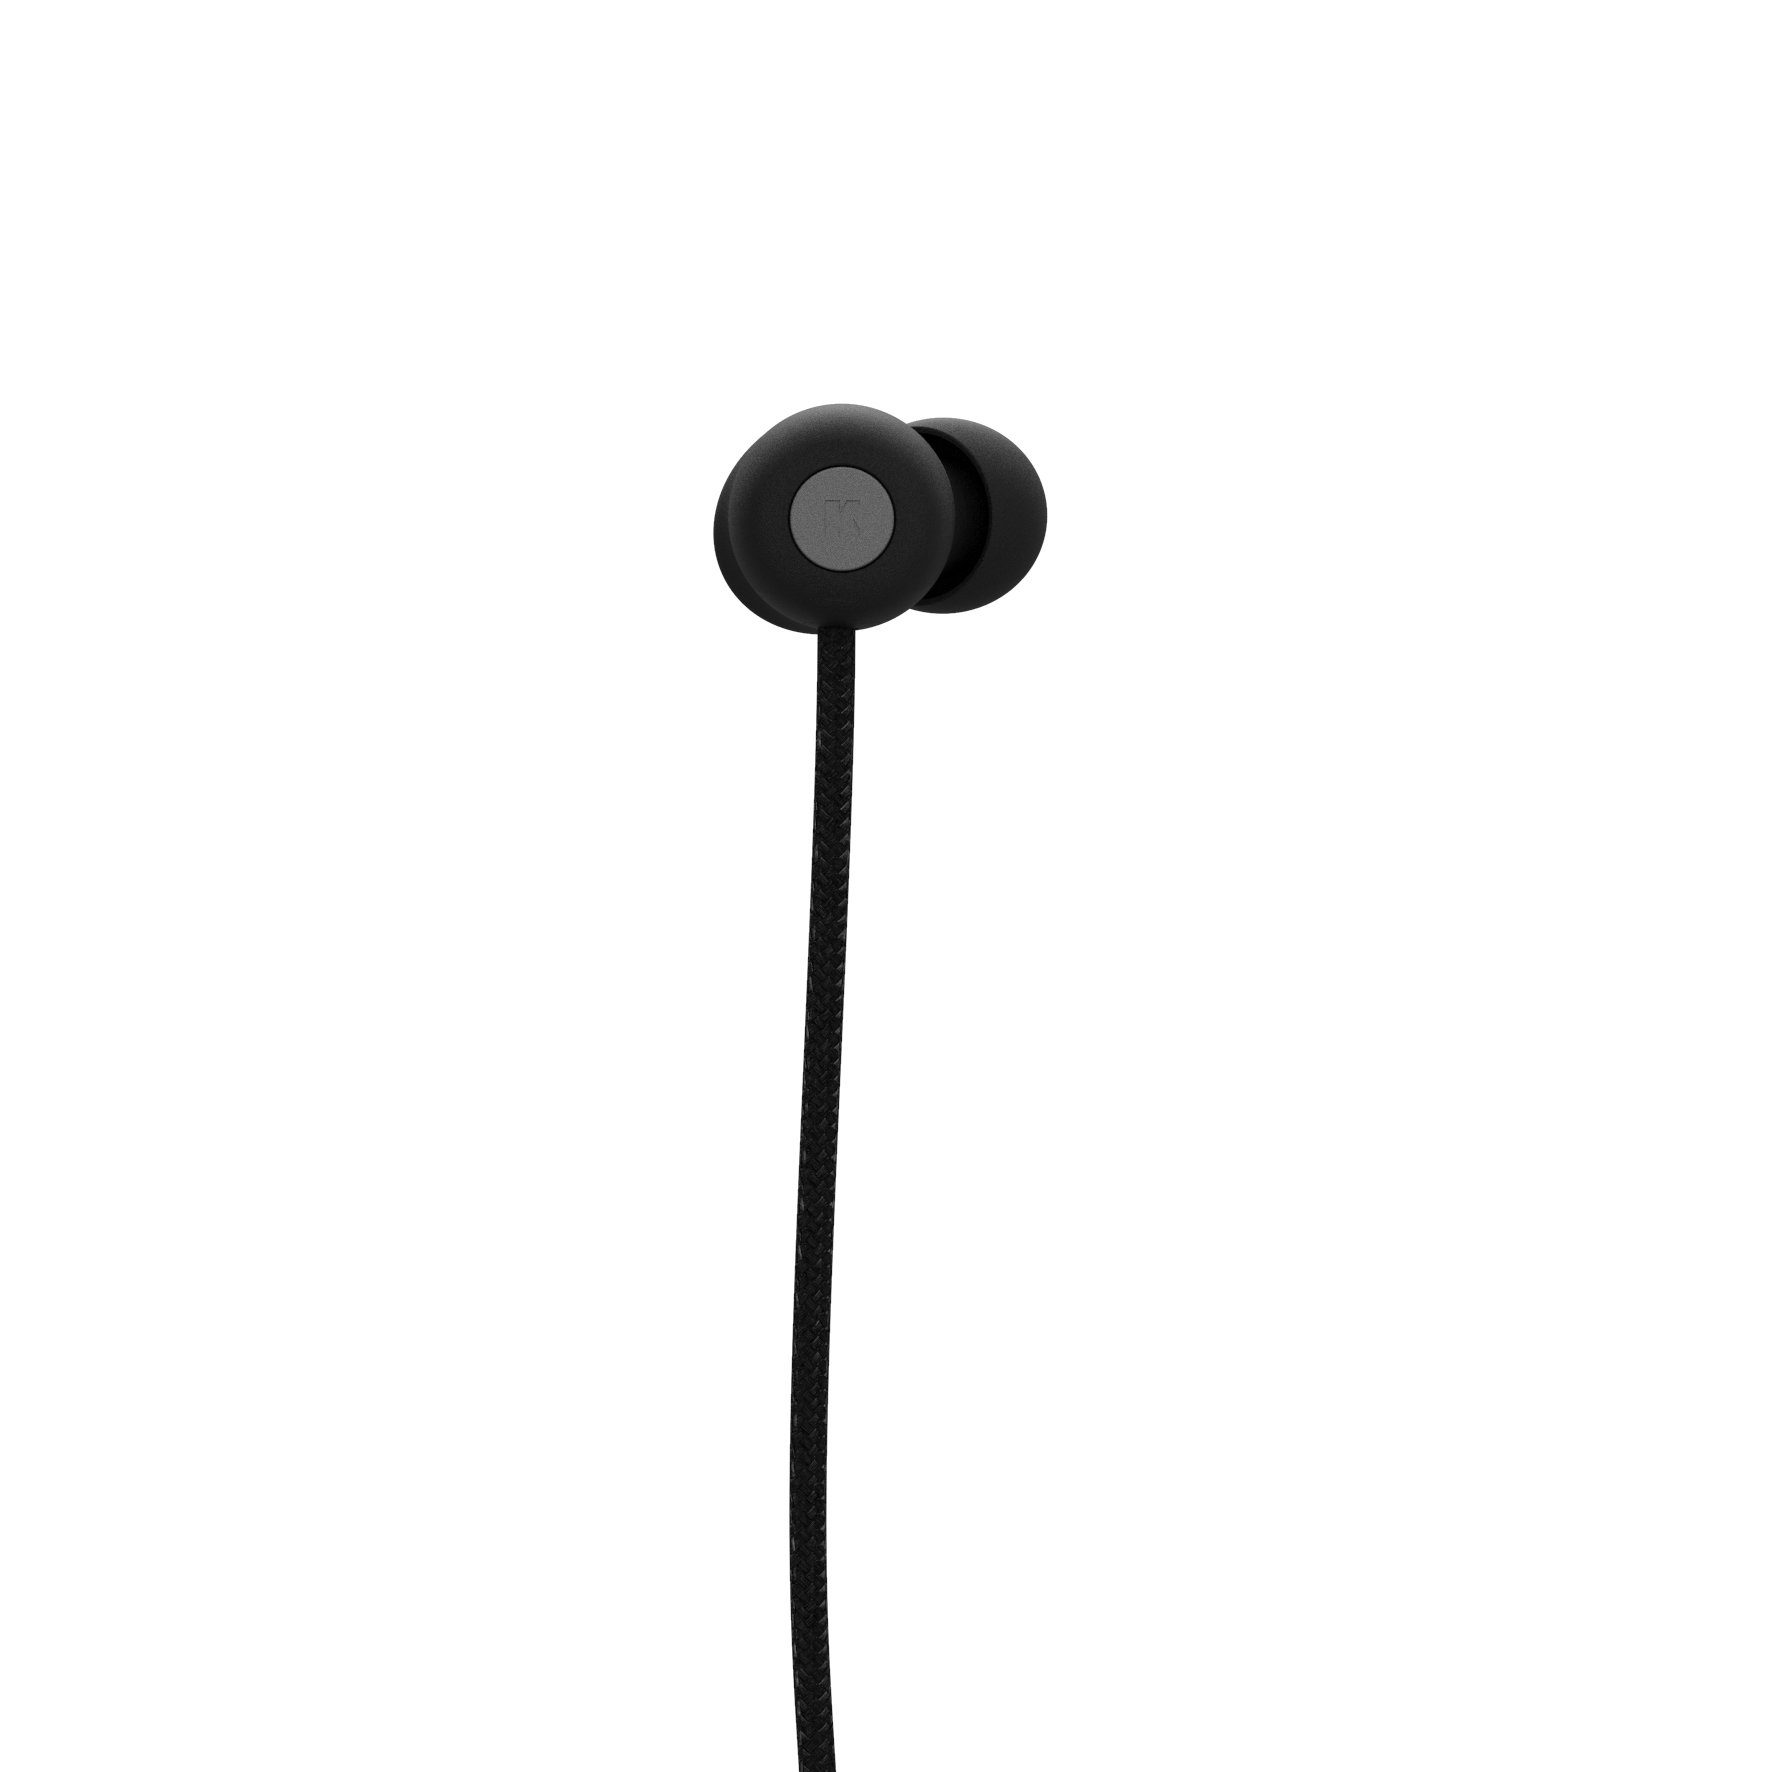 KREAFUNK On-Ear-Kopfhörer Black Kopfhörer) Bluetooth (aVIBE edition